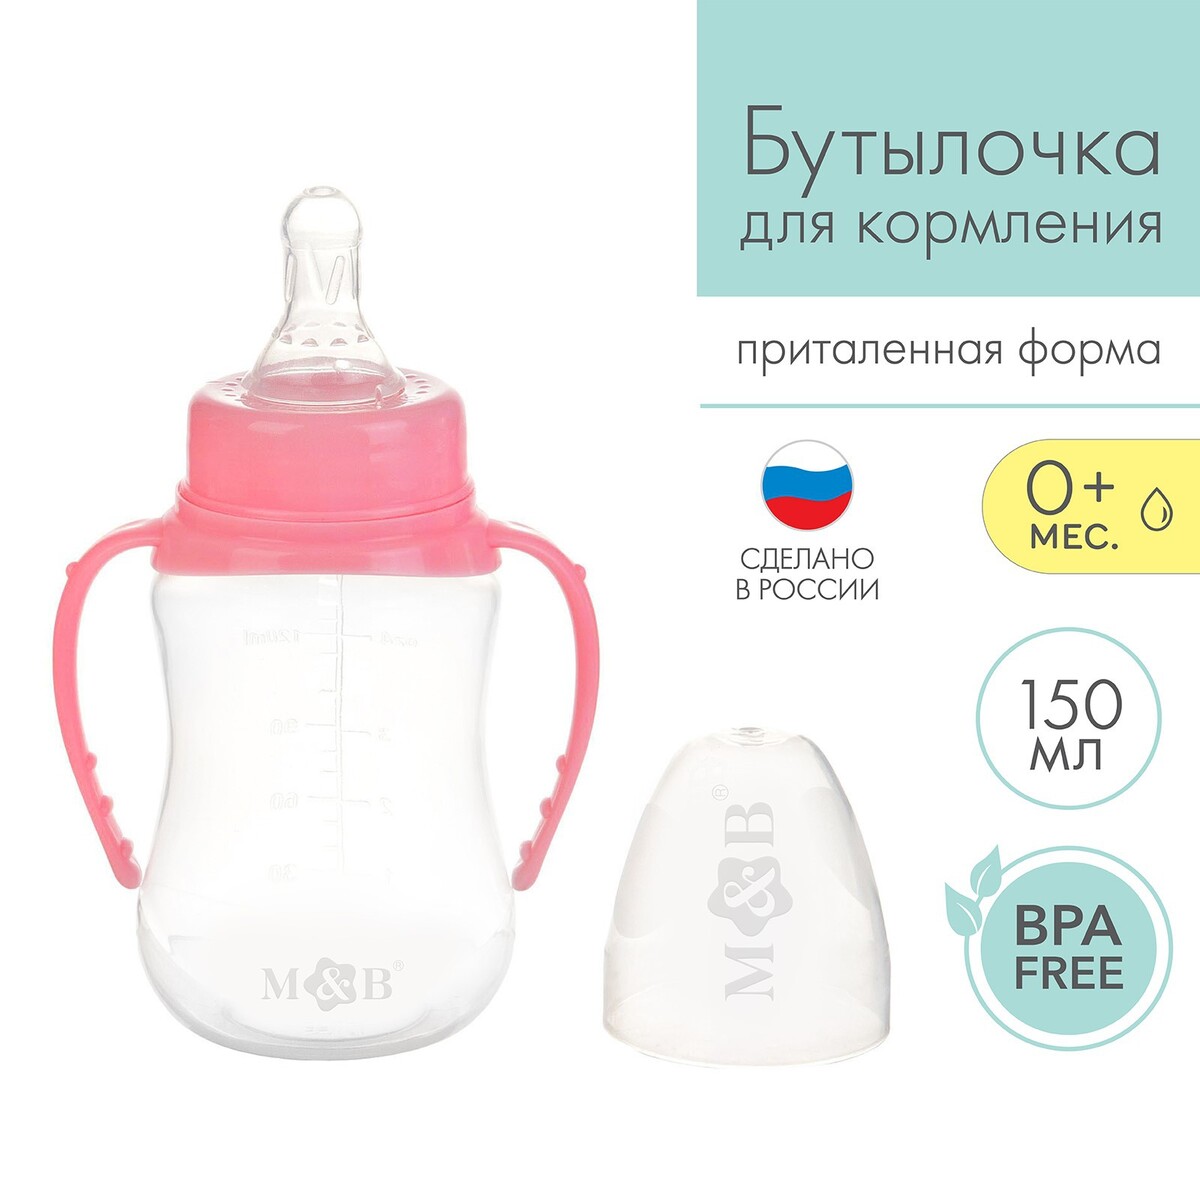 Бутылочка для кормления, классическое горло, приталенная, с ручками, 150 мл., от 0 мес., цвет розовый бутылочка для кормления mum